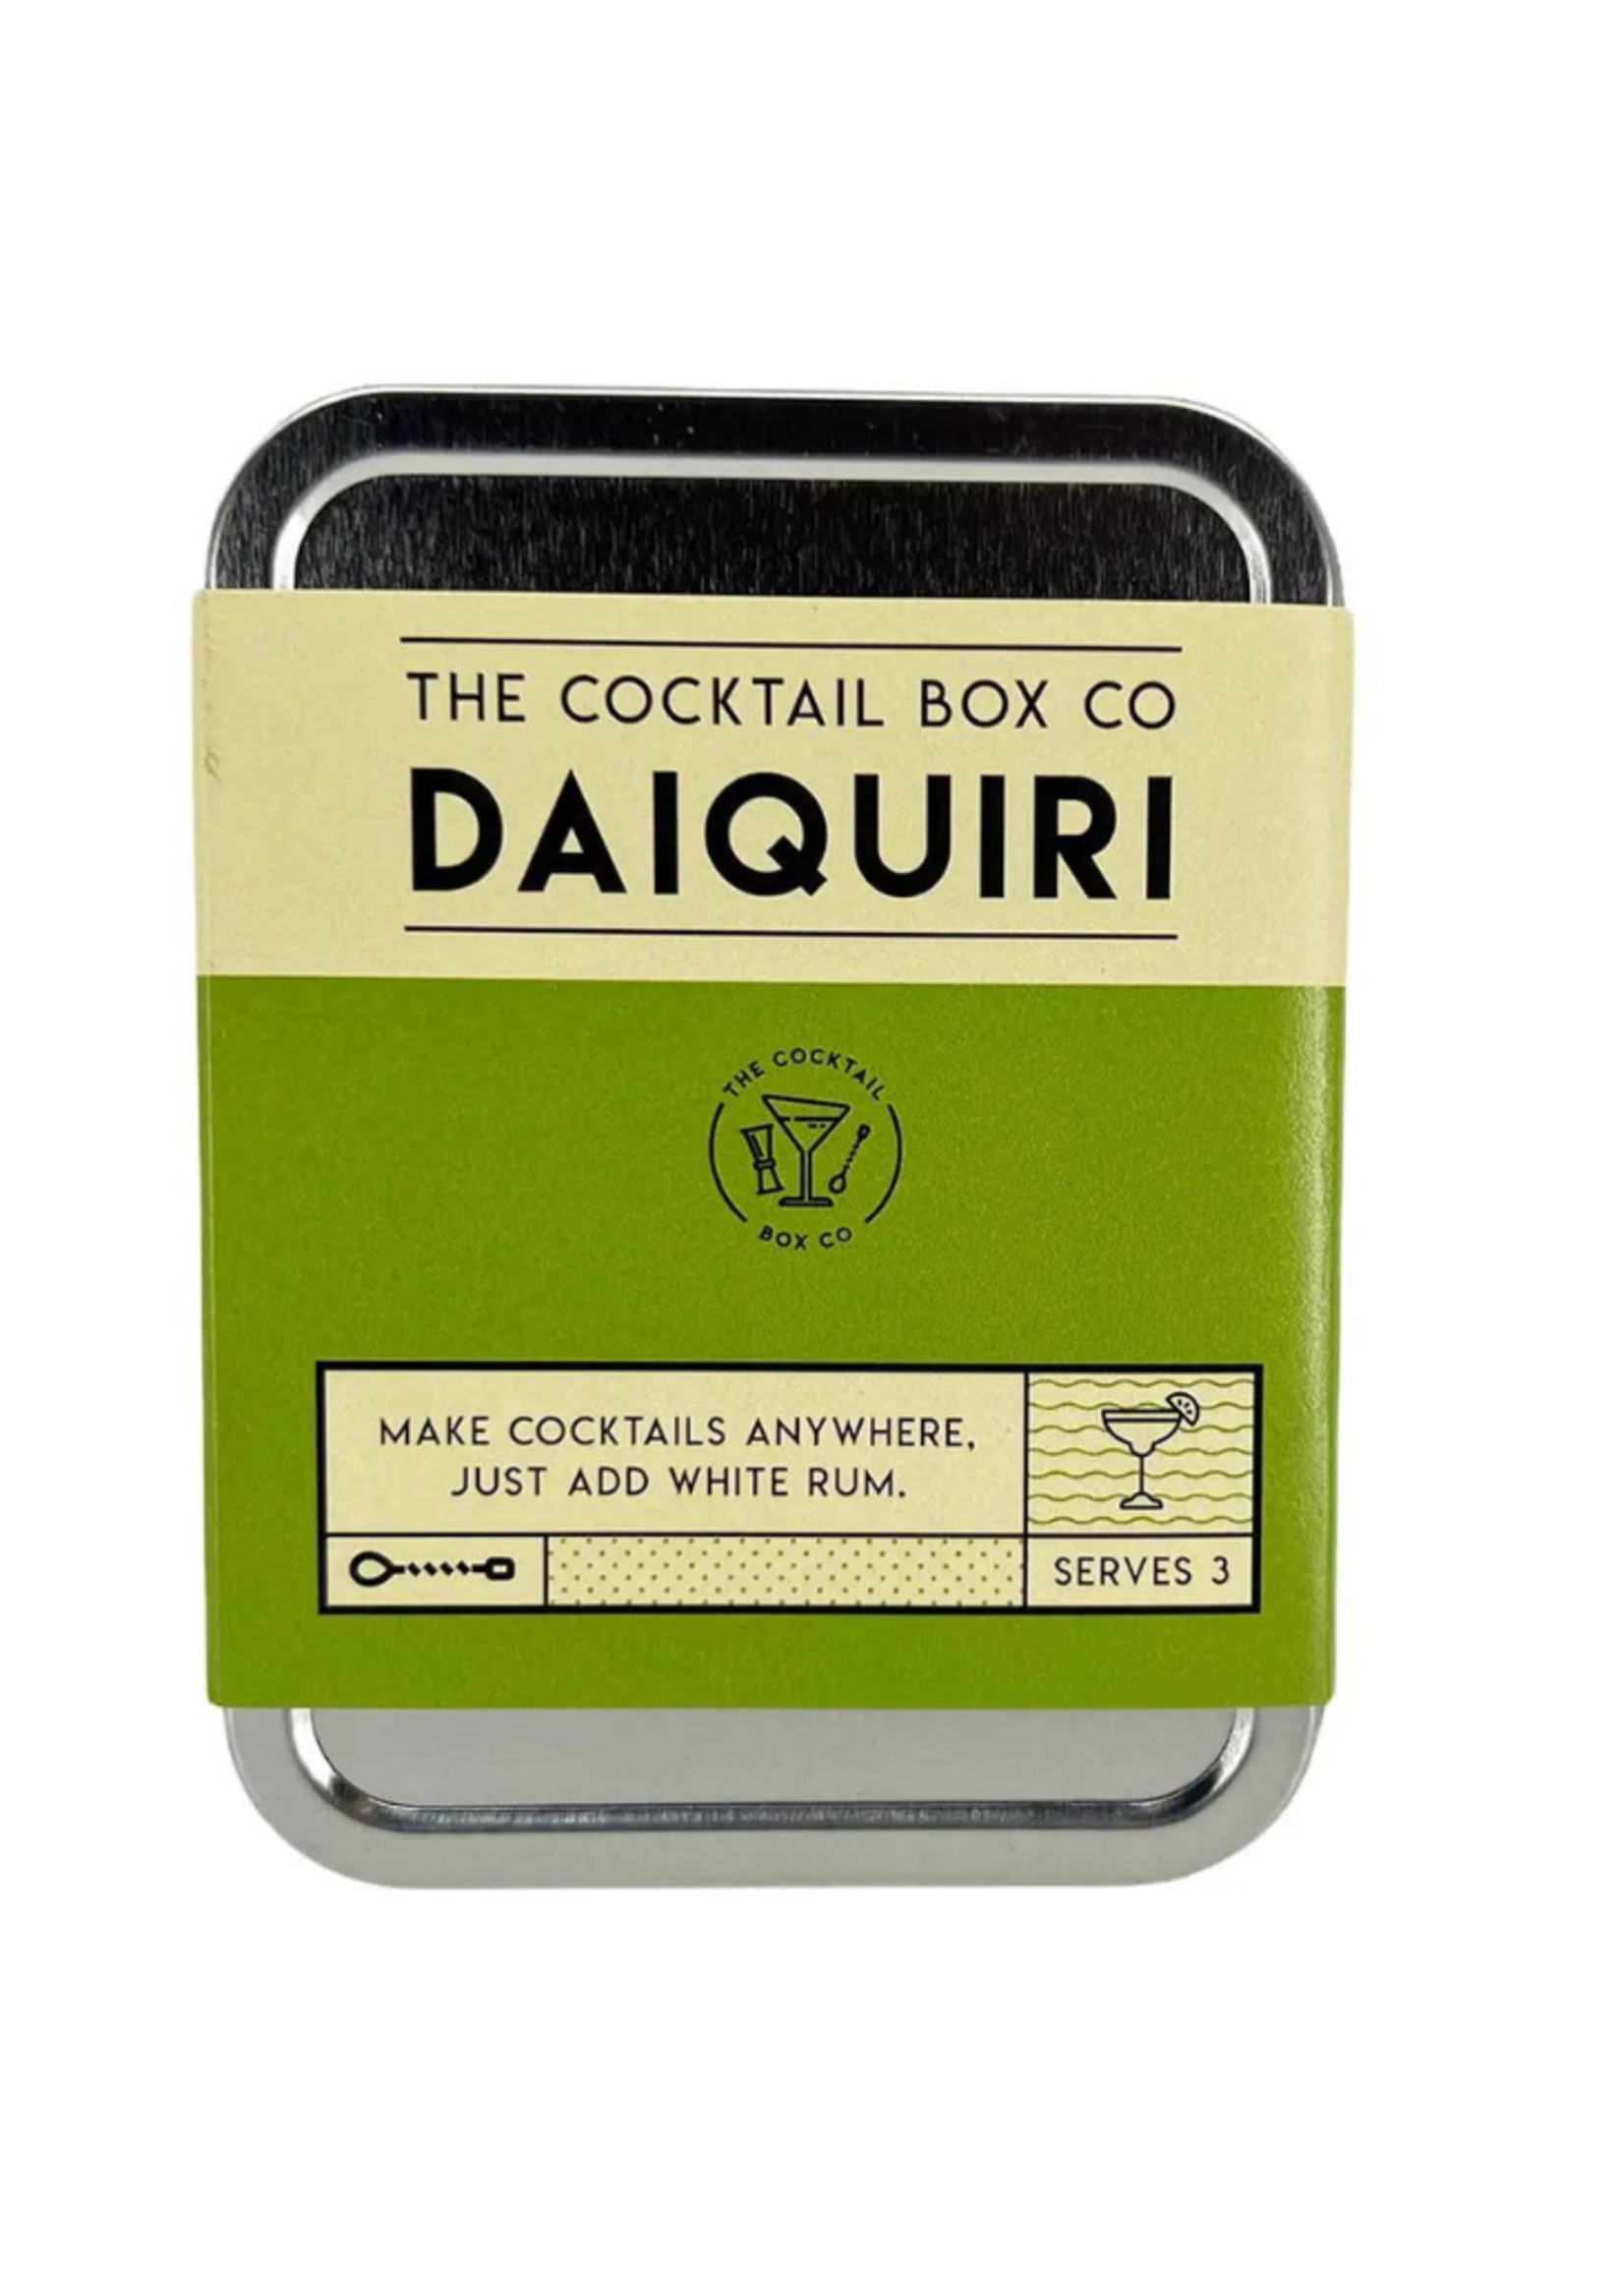 The Cocktail Box Co. The Cocktail Box Co. - The Daiquiri Cocktail Kit